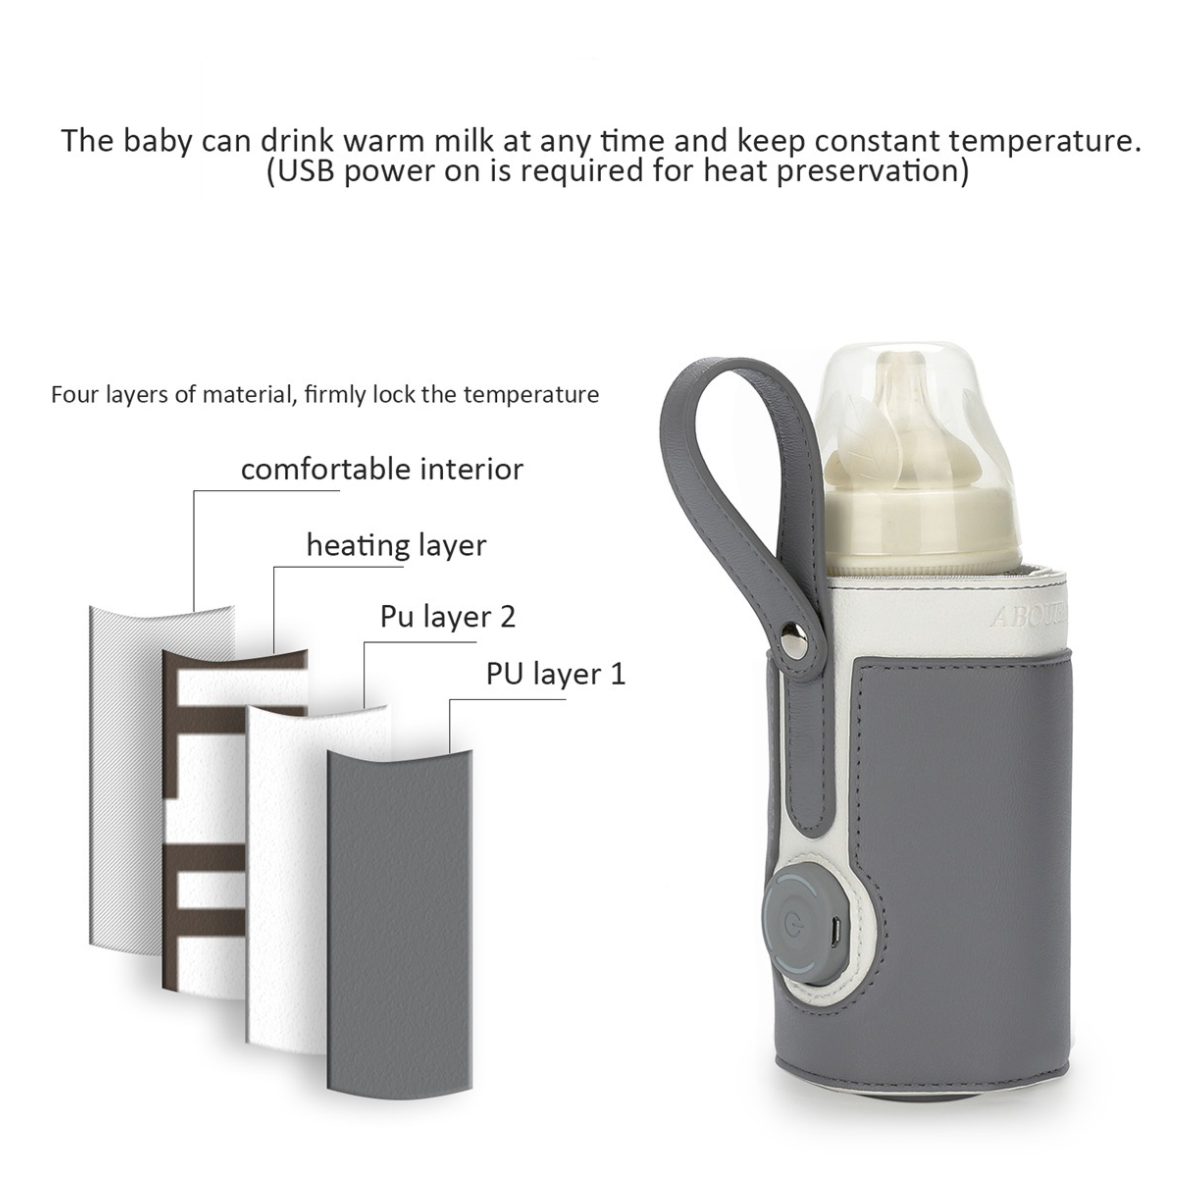 UWOT Smart Thermal Bottle Braun einfach&praktisch-5V Babykostwärmer sicher&kontrollierbar, Tragbar&elegant, Cover